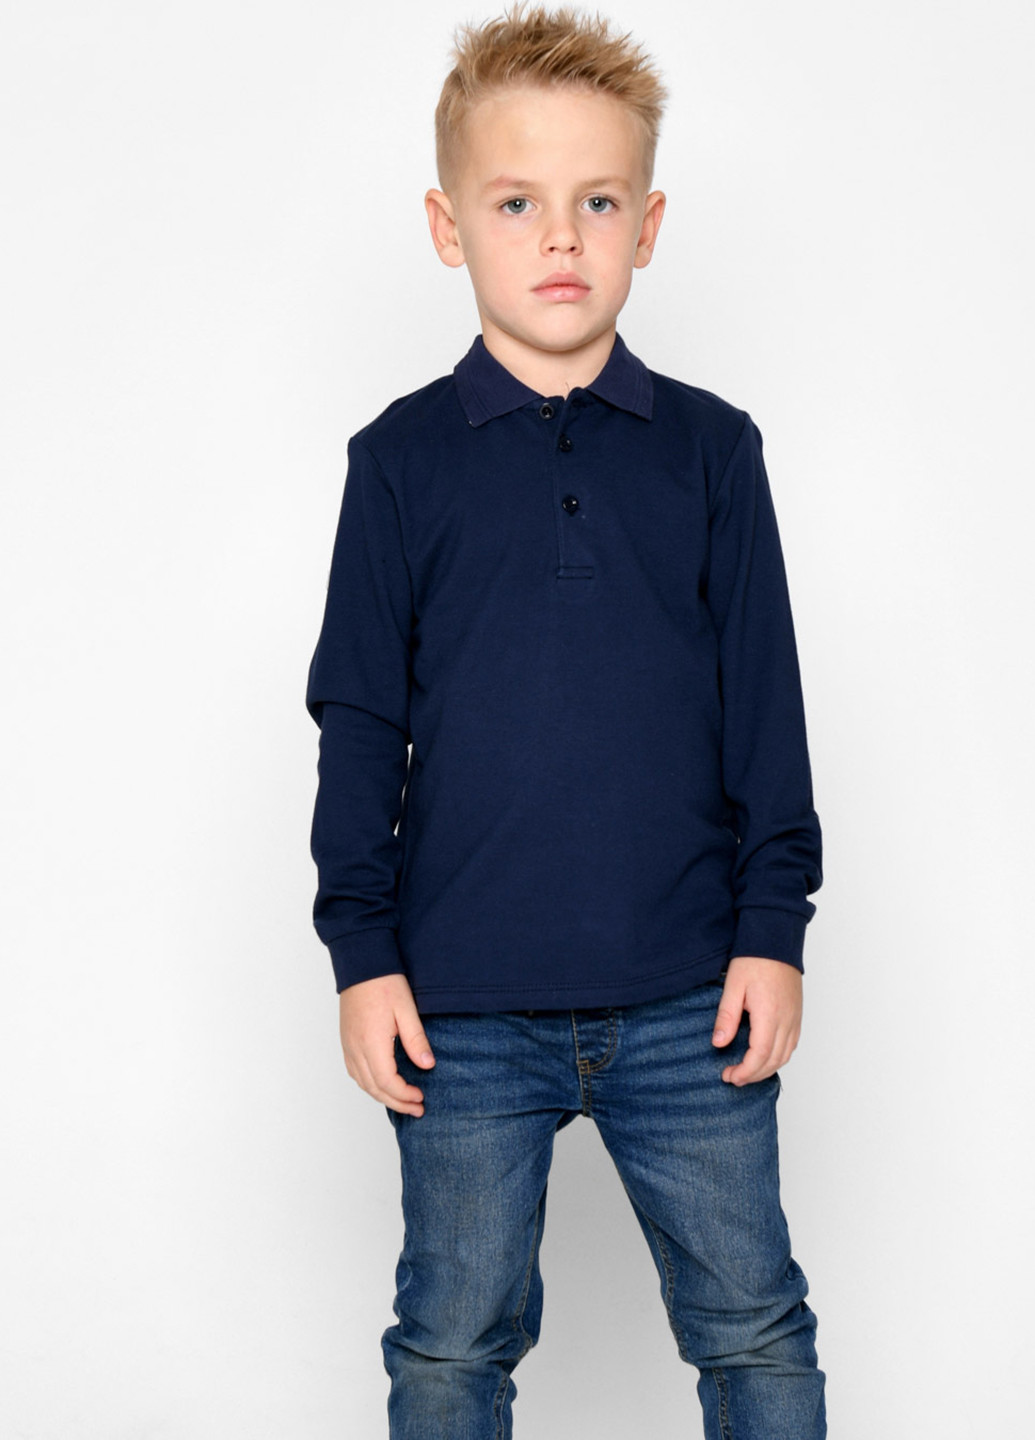 Темно-синяя детская футболка-поло для мальчика Carica однотонная